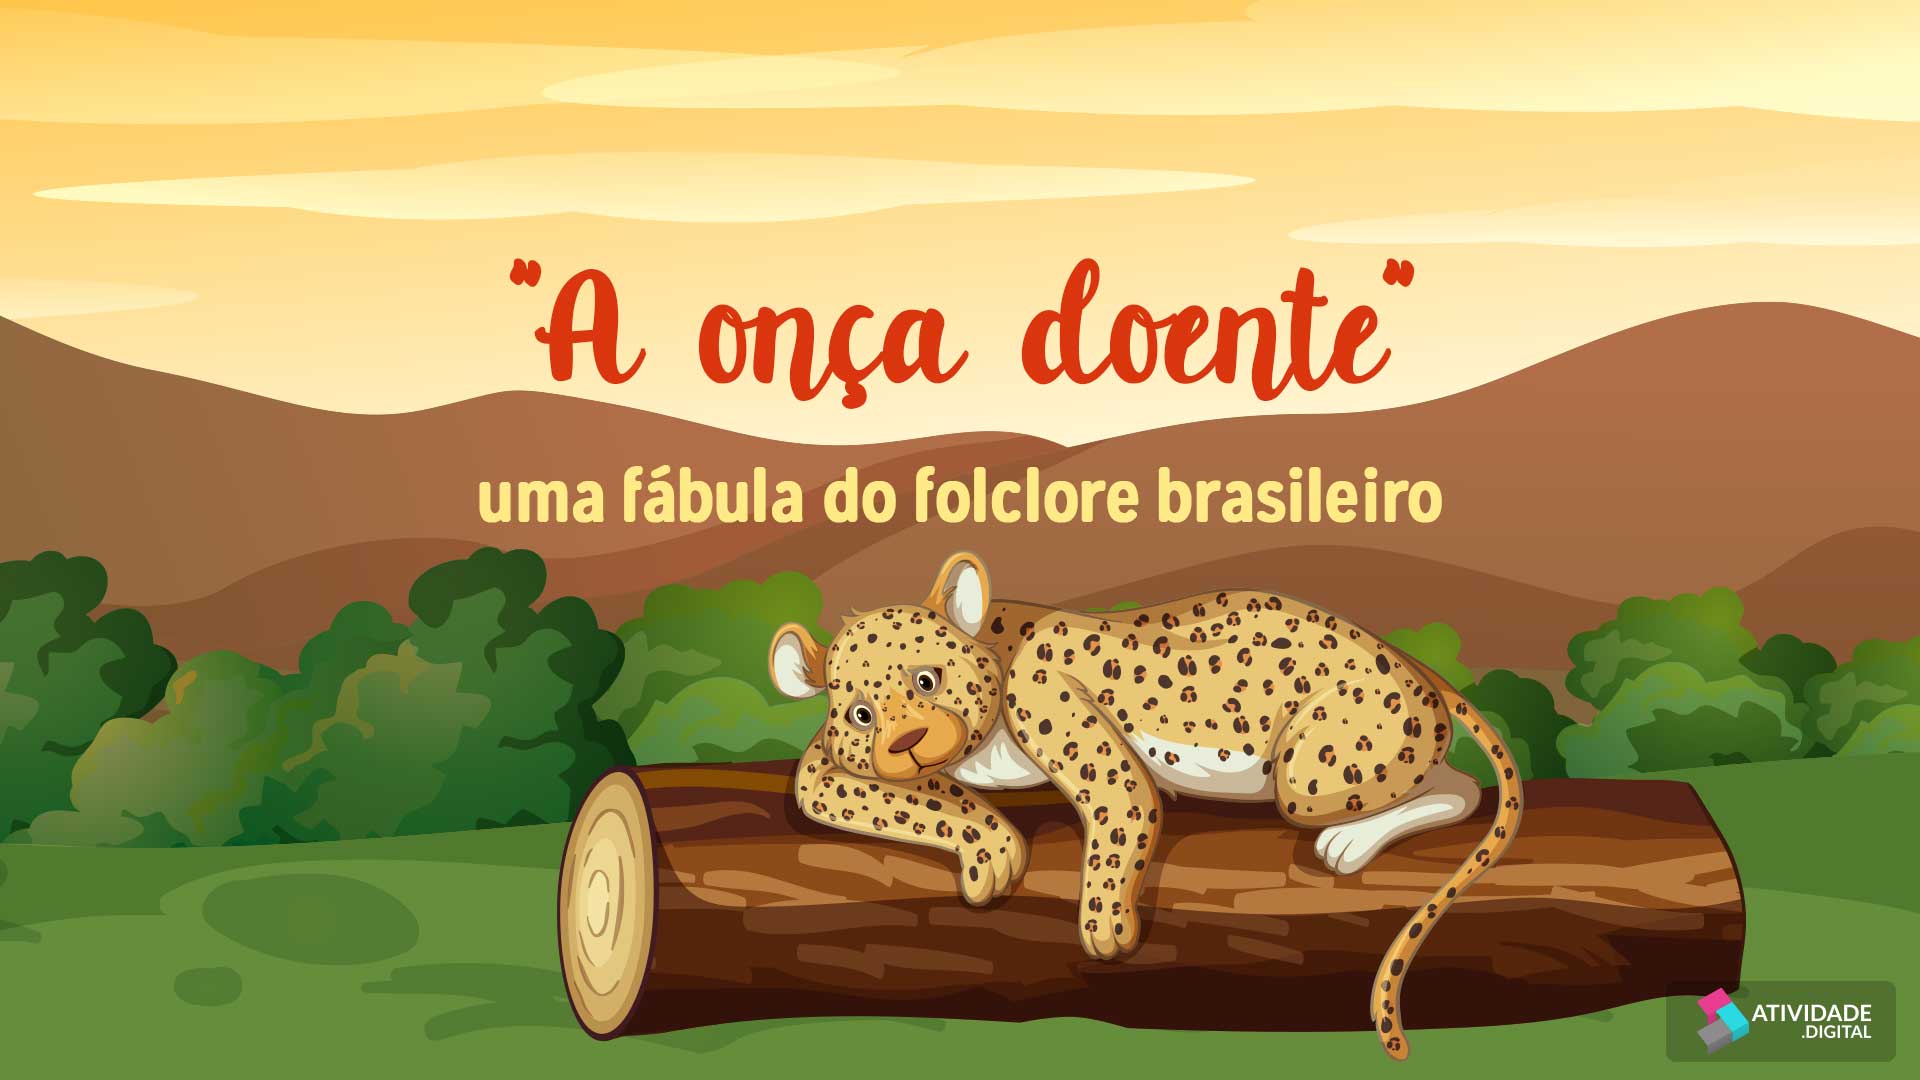 "A onça doente" - uma fábula do folclore brasileiro